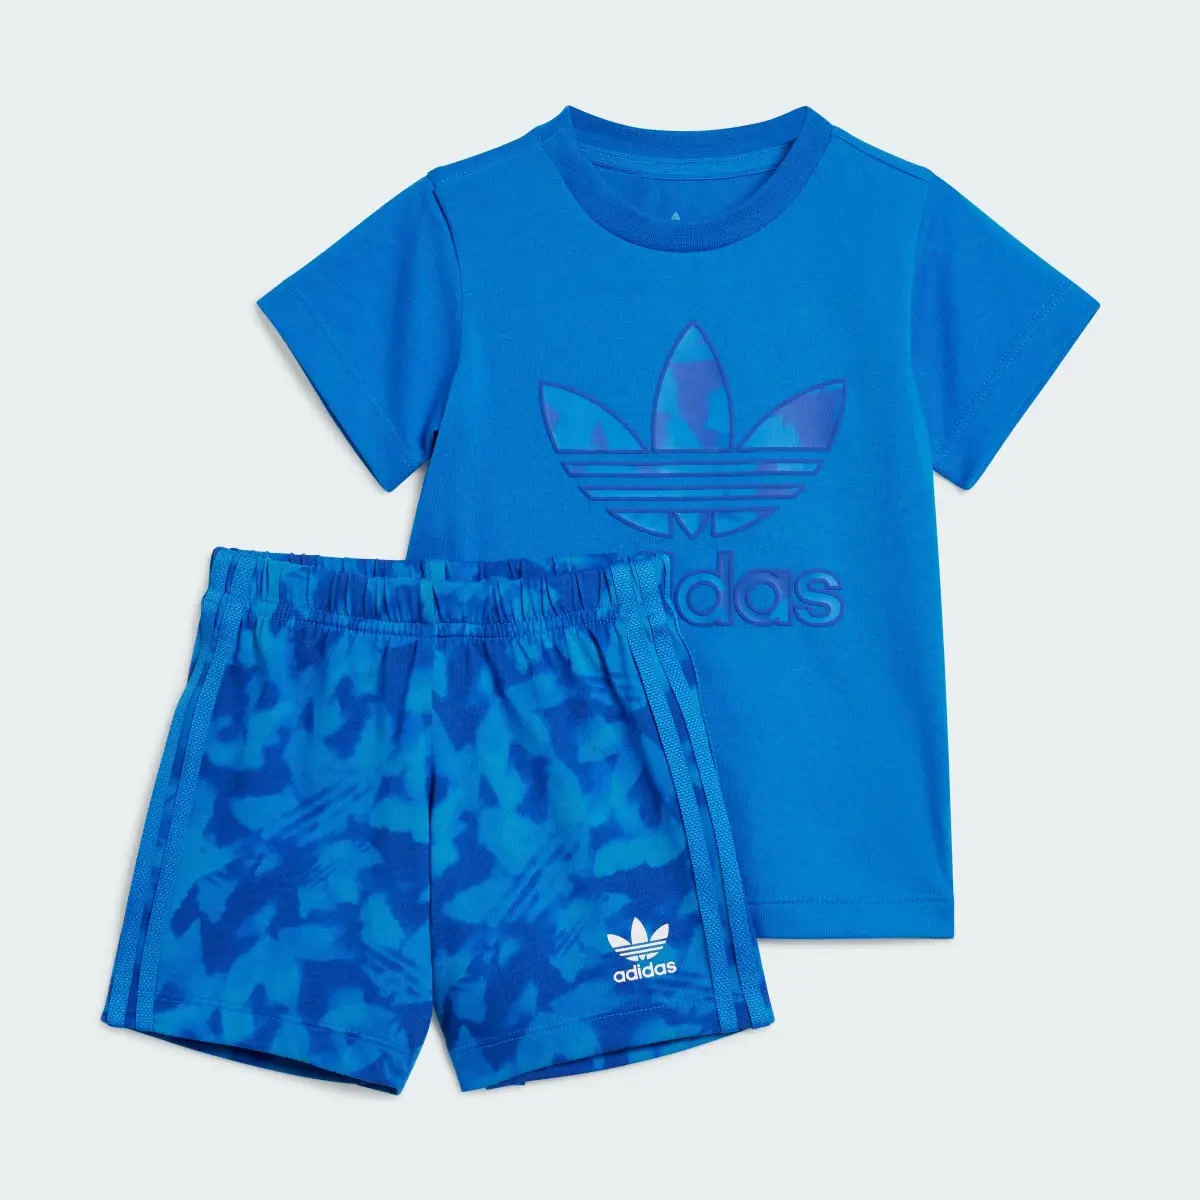 Adidas Summer Allover Print Short Tee Set. 2